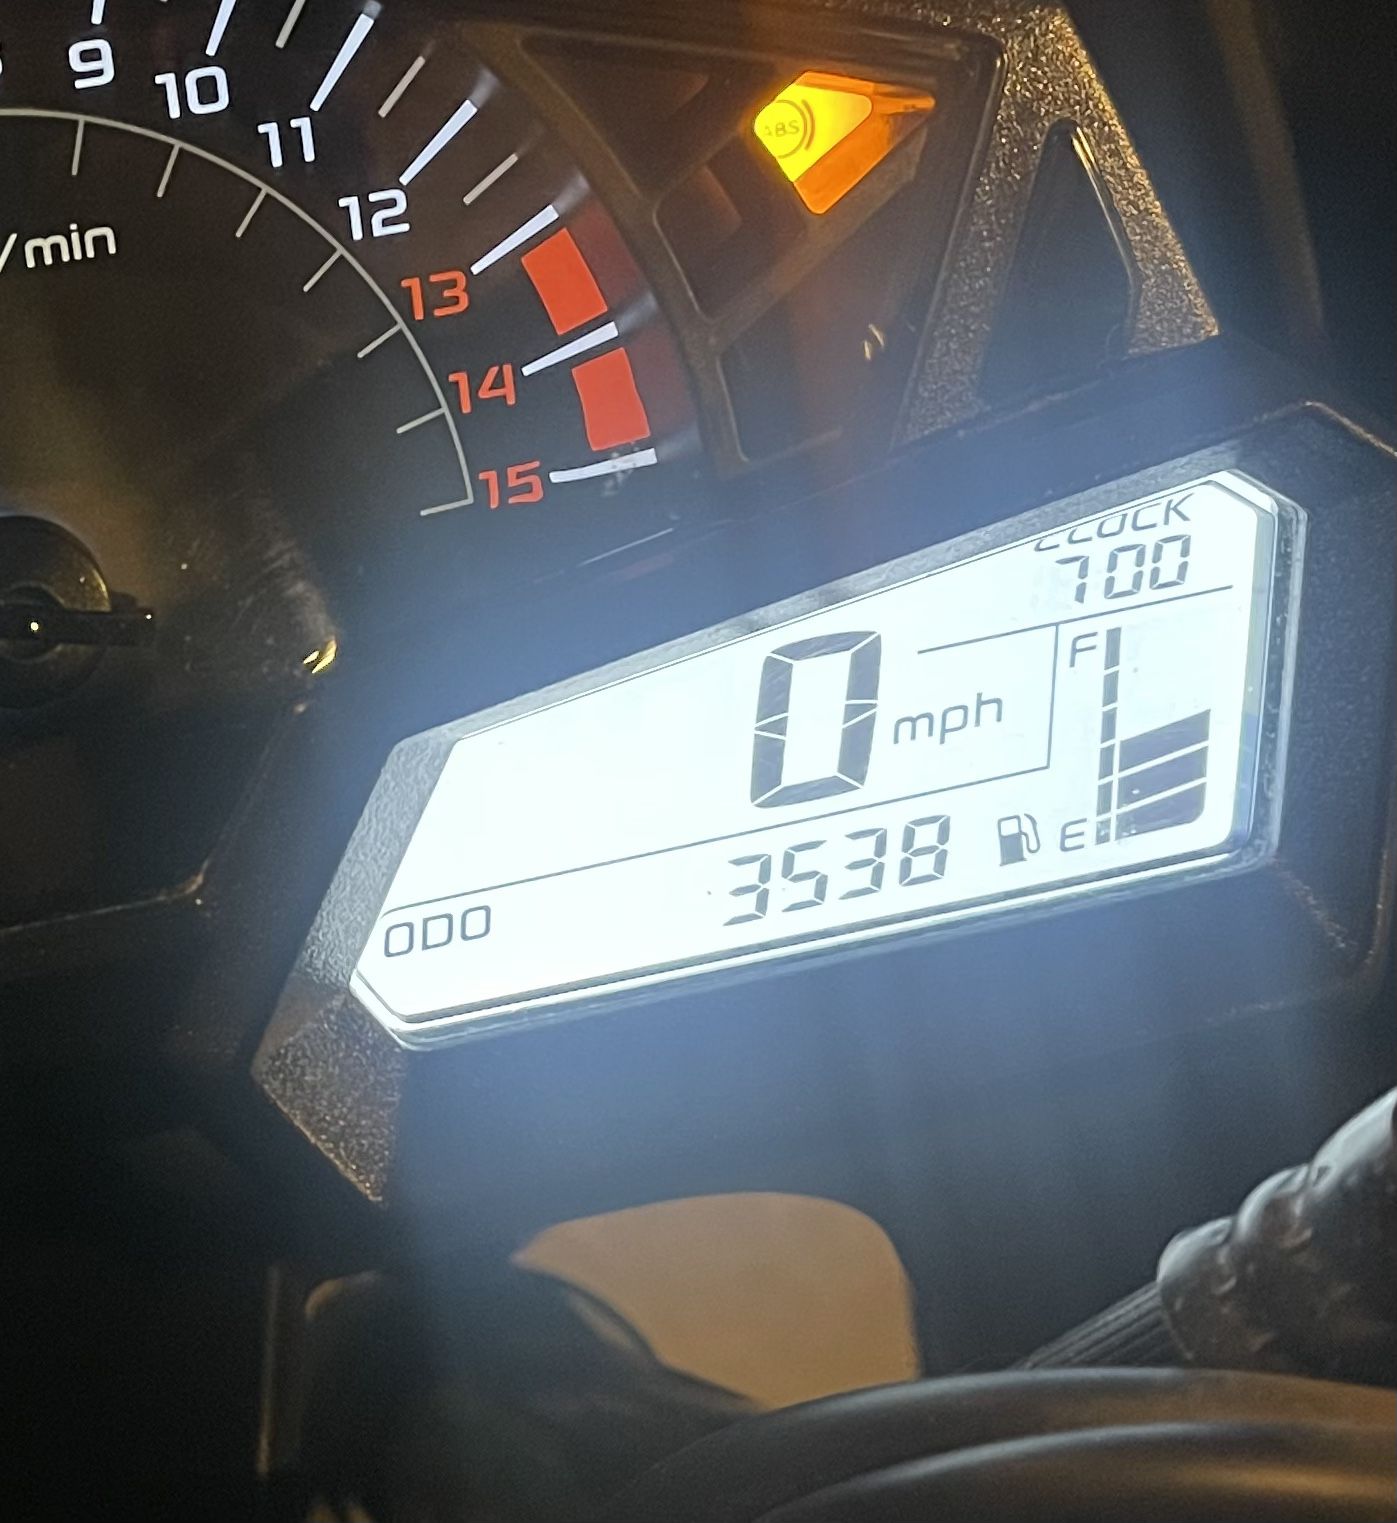 2014 Kawasaki 300 Special Edition